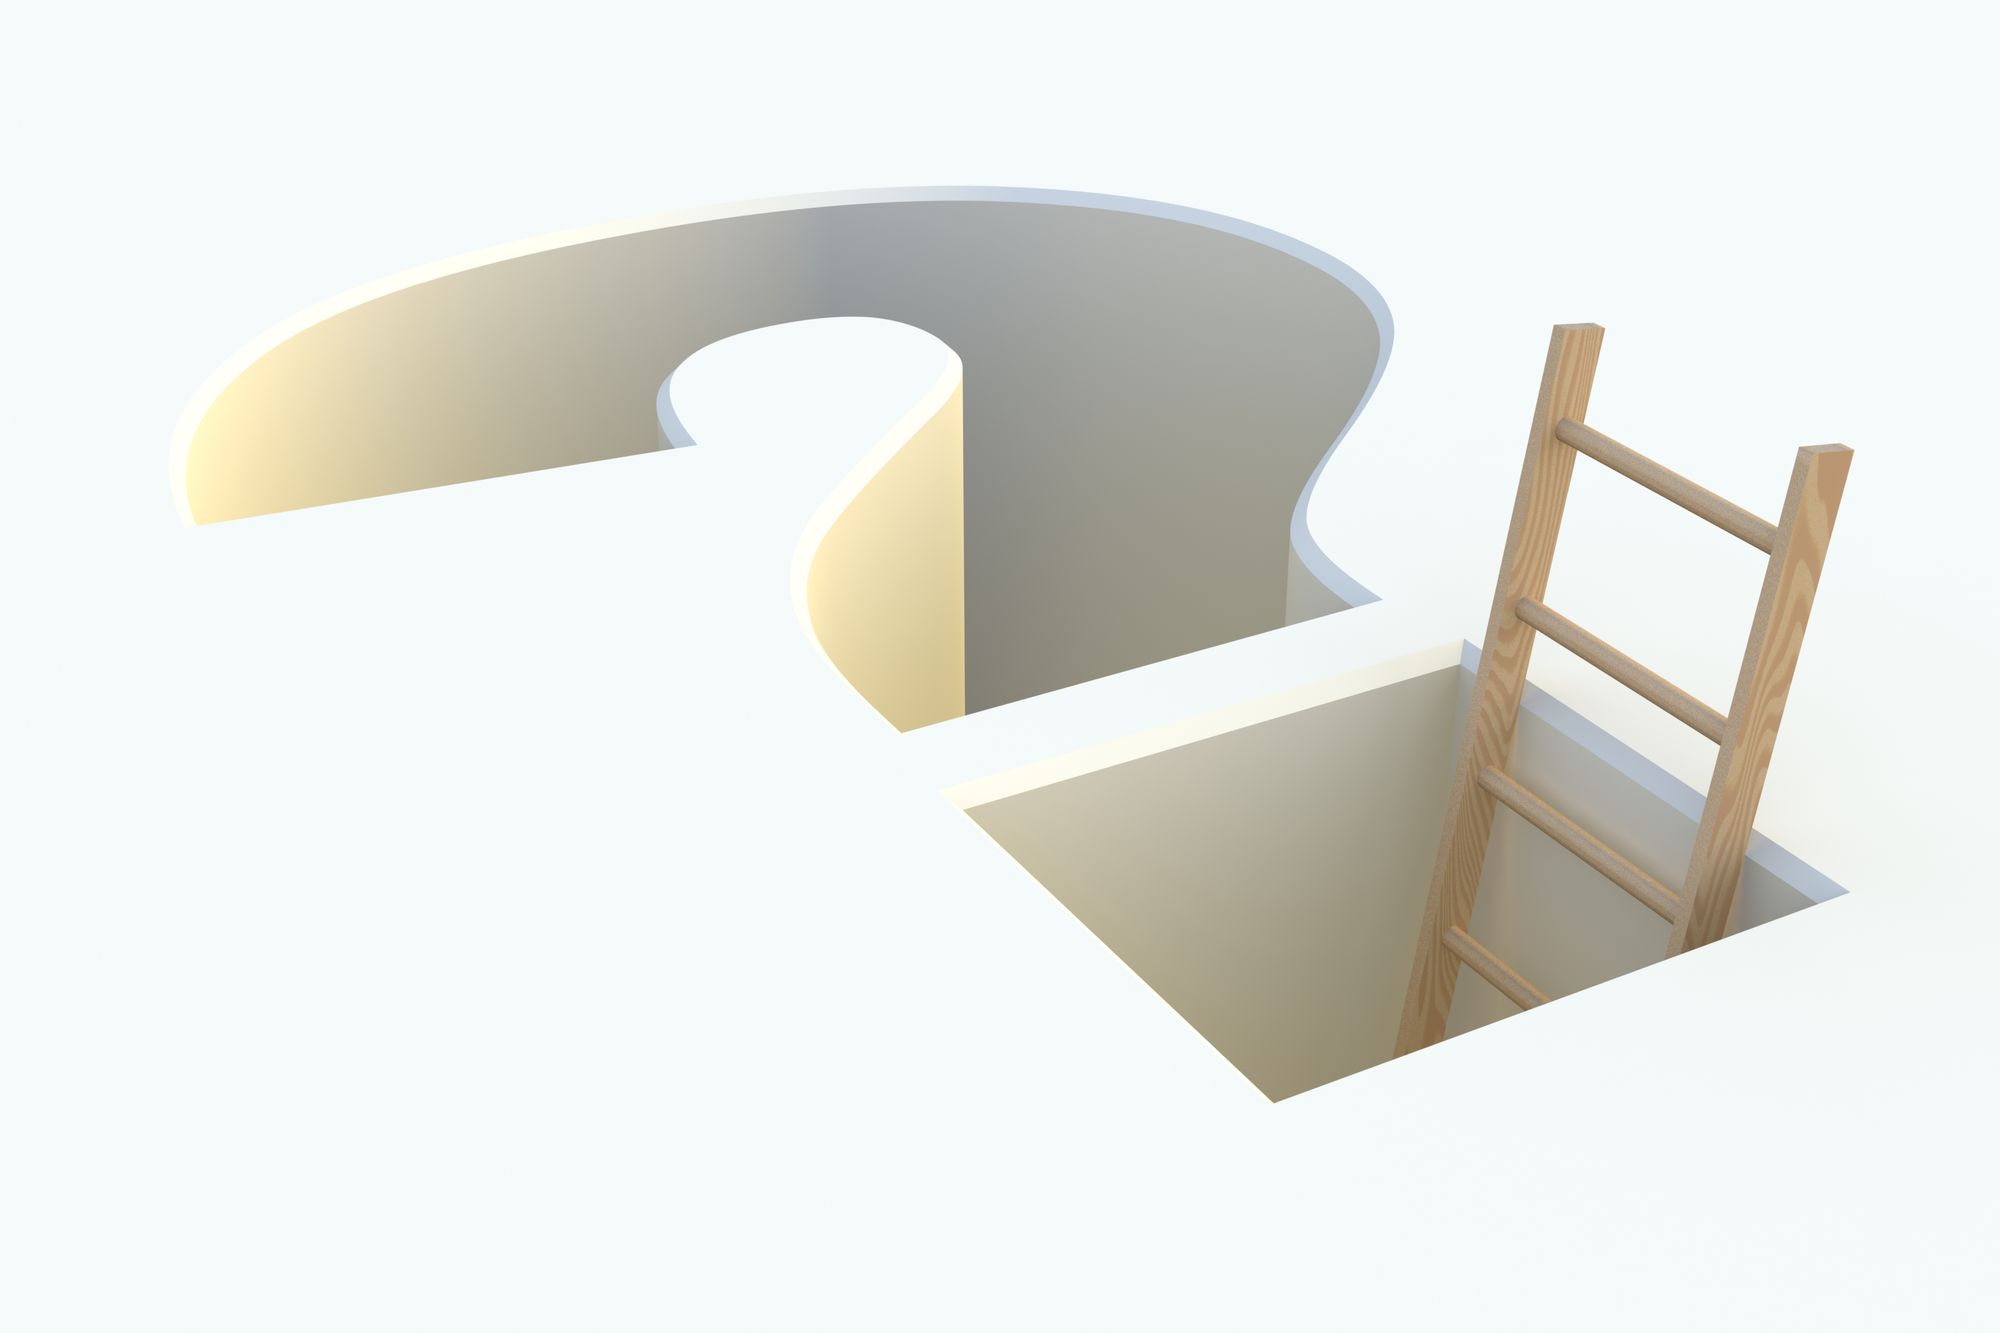 Ladder inside a 3D question mark